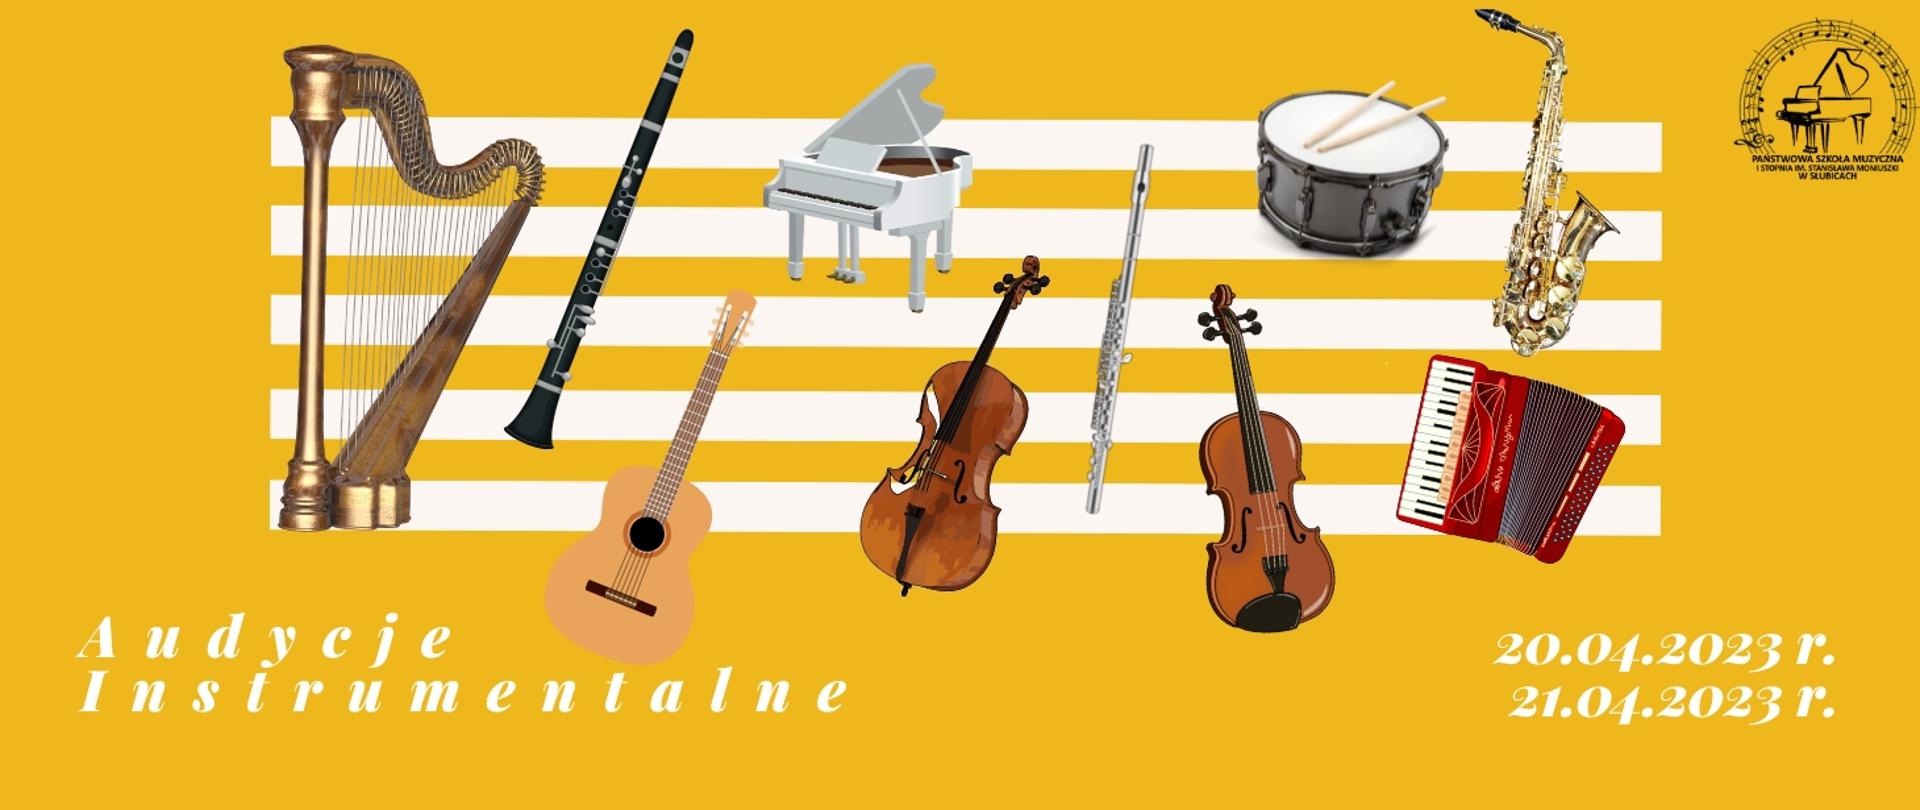 Zapowiedź audycji, na żółtym tle ikony instrumentów muzycznych, napis audycje instrumentalne, data audycji i logo szkoły.